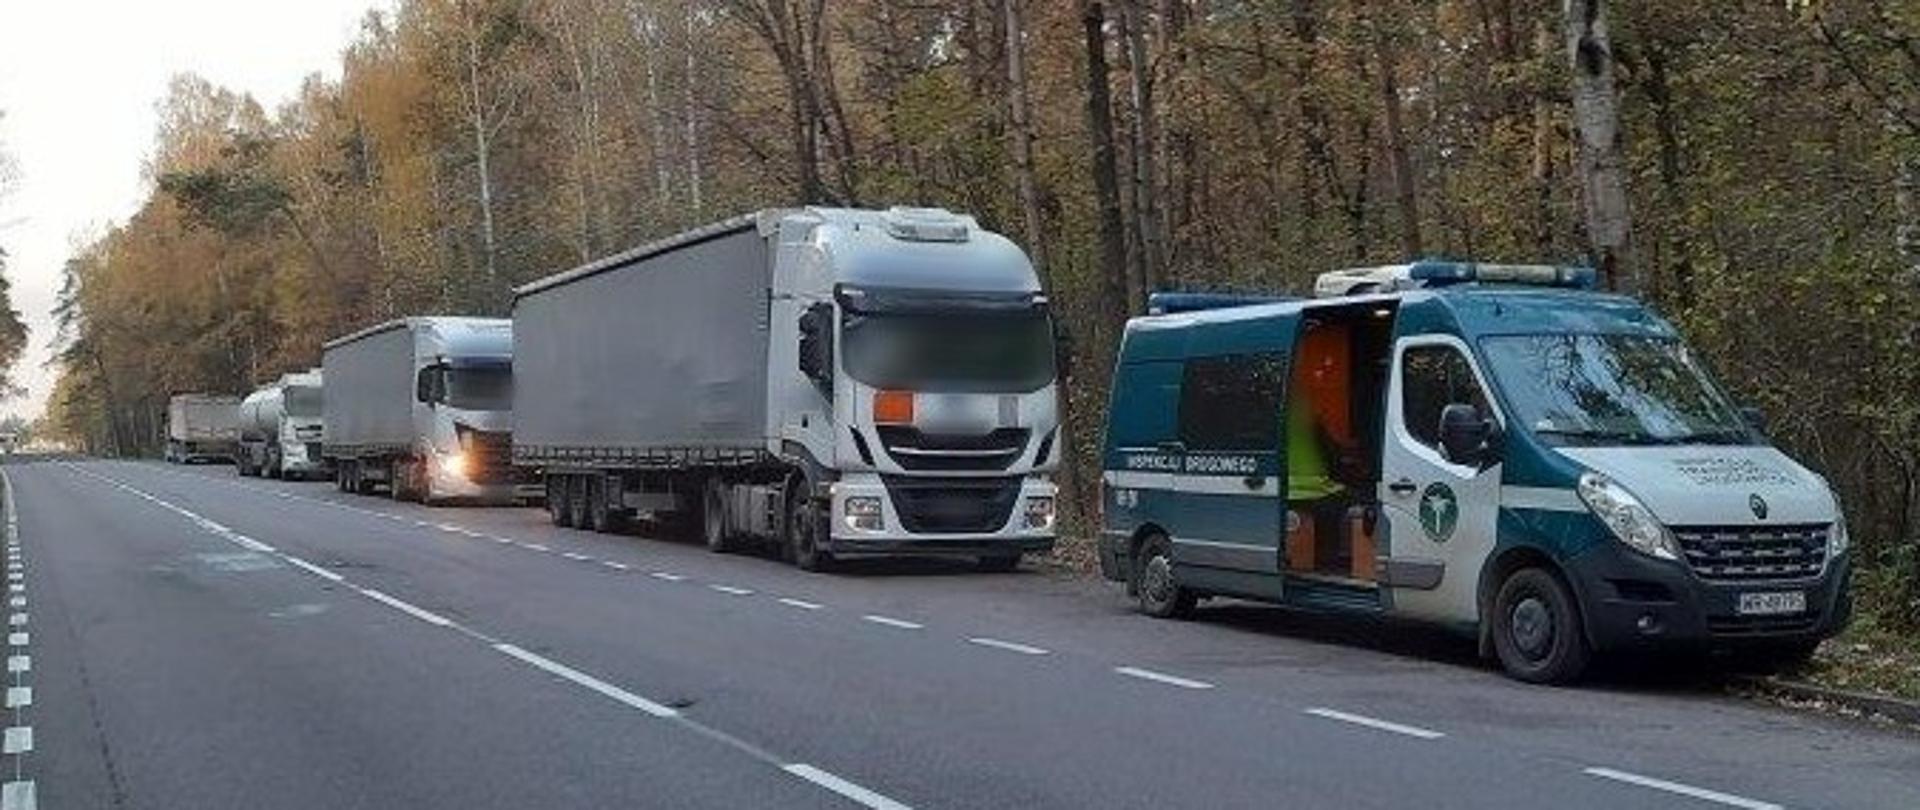 Od prawej: przód i prawy bok oznakowanego furgonu mazowieckiej Inspekcji Transportu Drogowego. Za radiowozem ITD stoi cztery kontrolowane zestawy ciężarowe zagranicznych przewoźników.